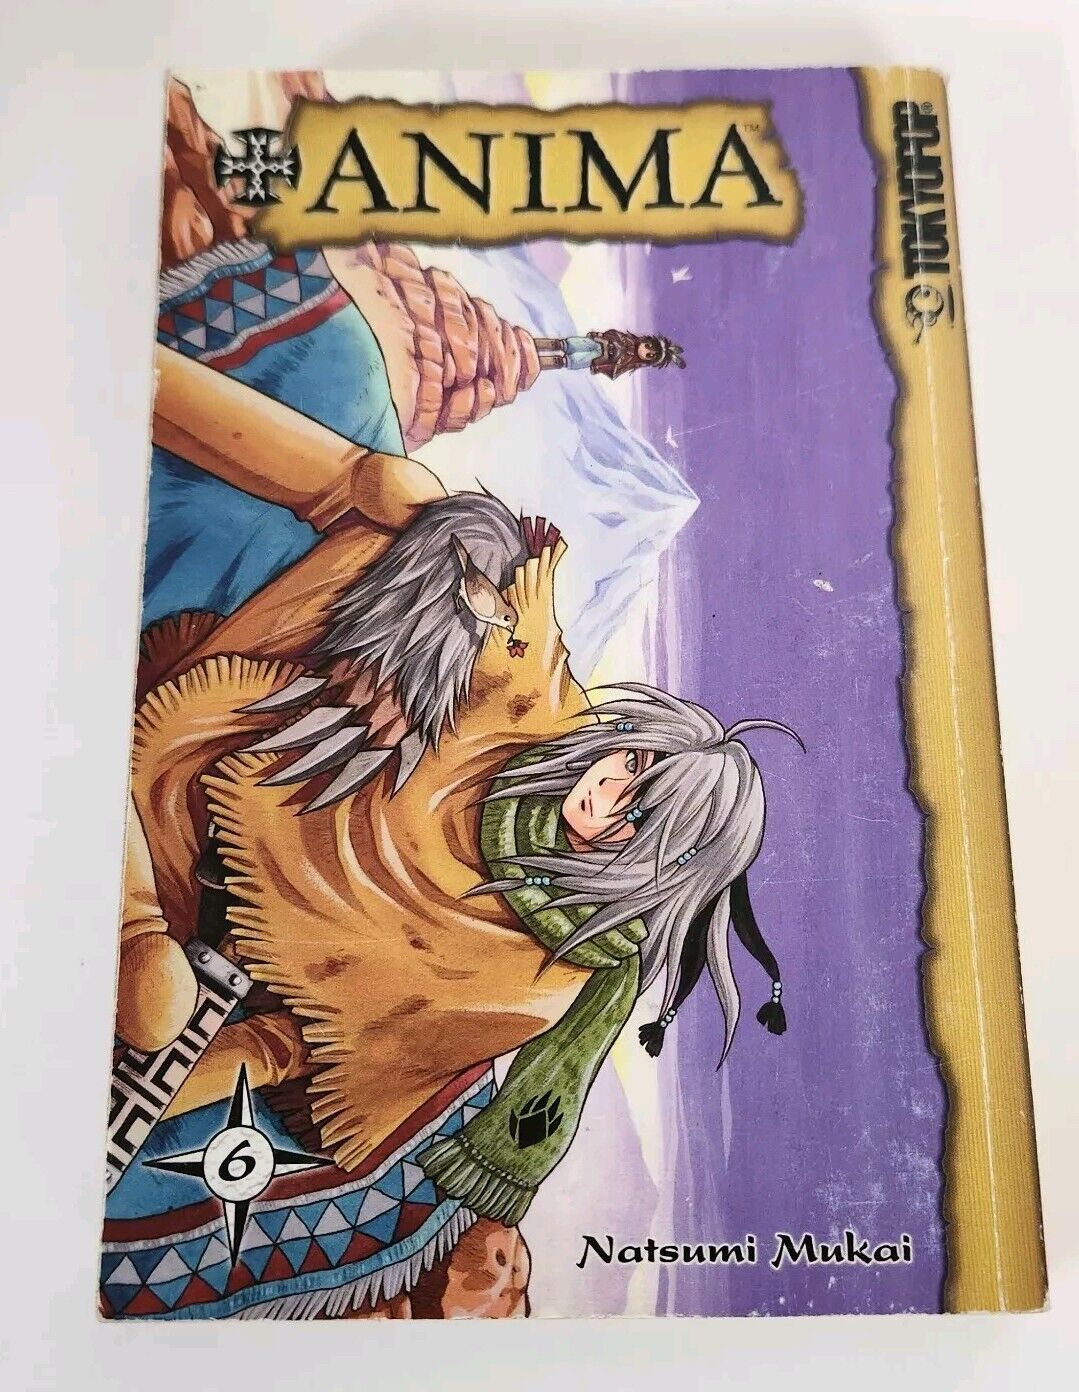 ANIMA Vol 6 Mukai Natsumi Tokyopop Manga Fantasy 